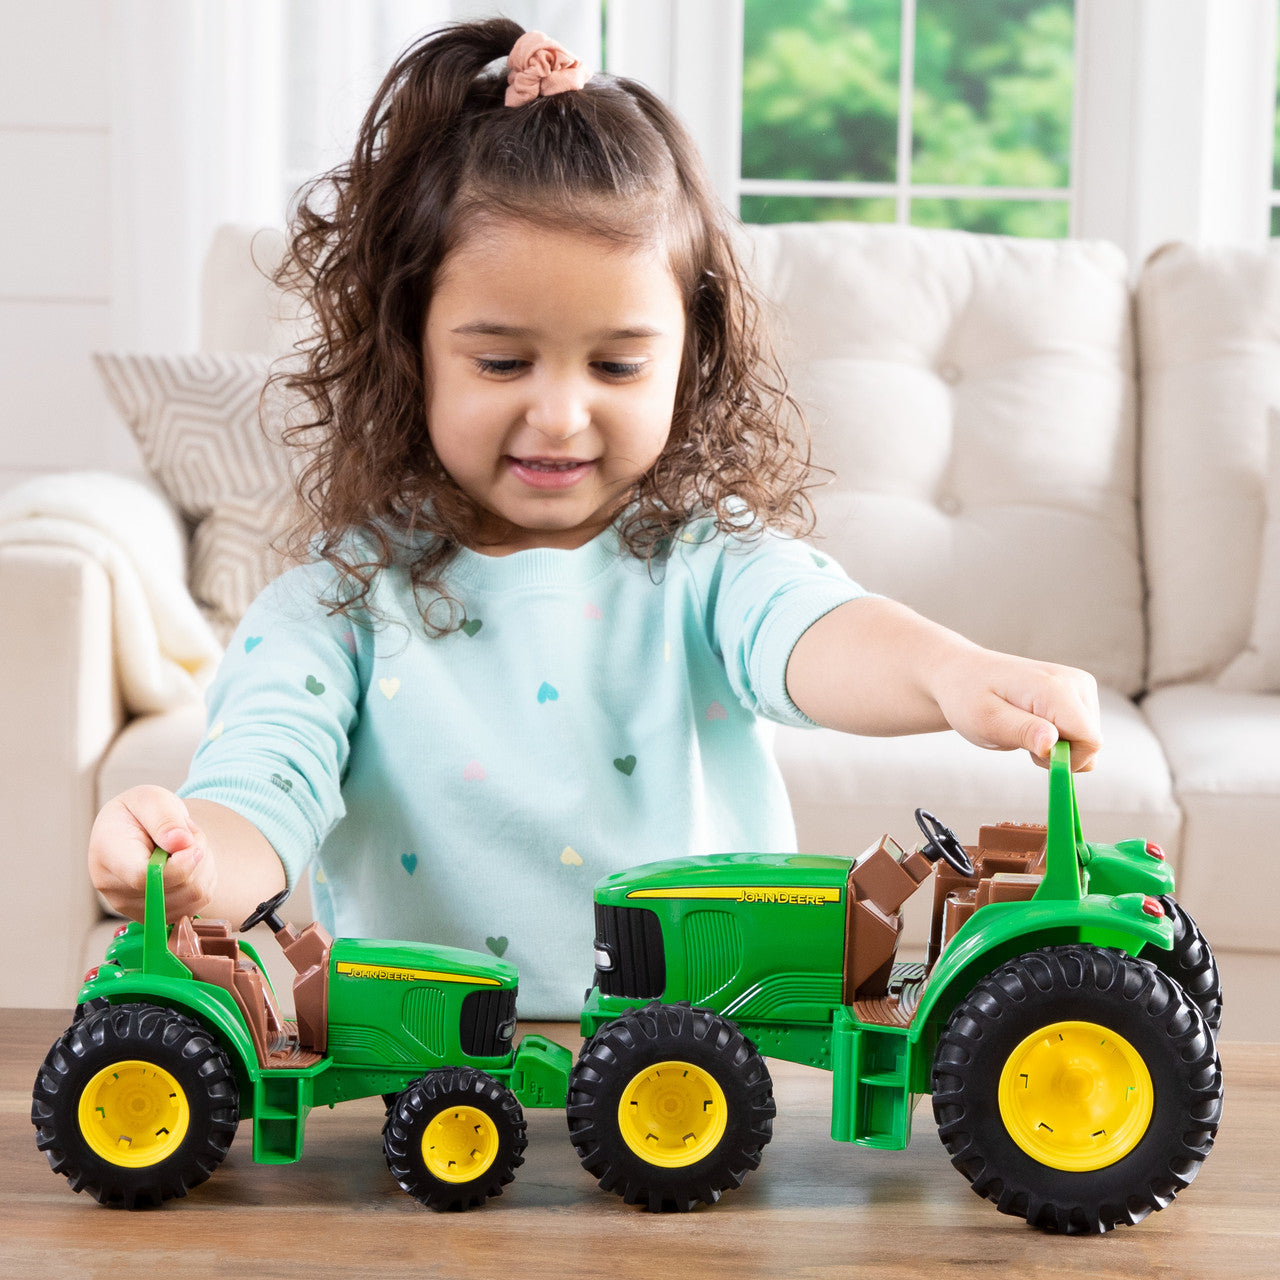 8" John Deere Tractor Toy